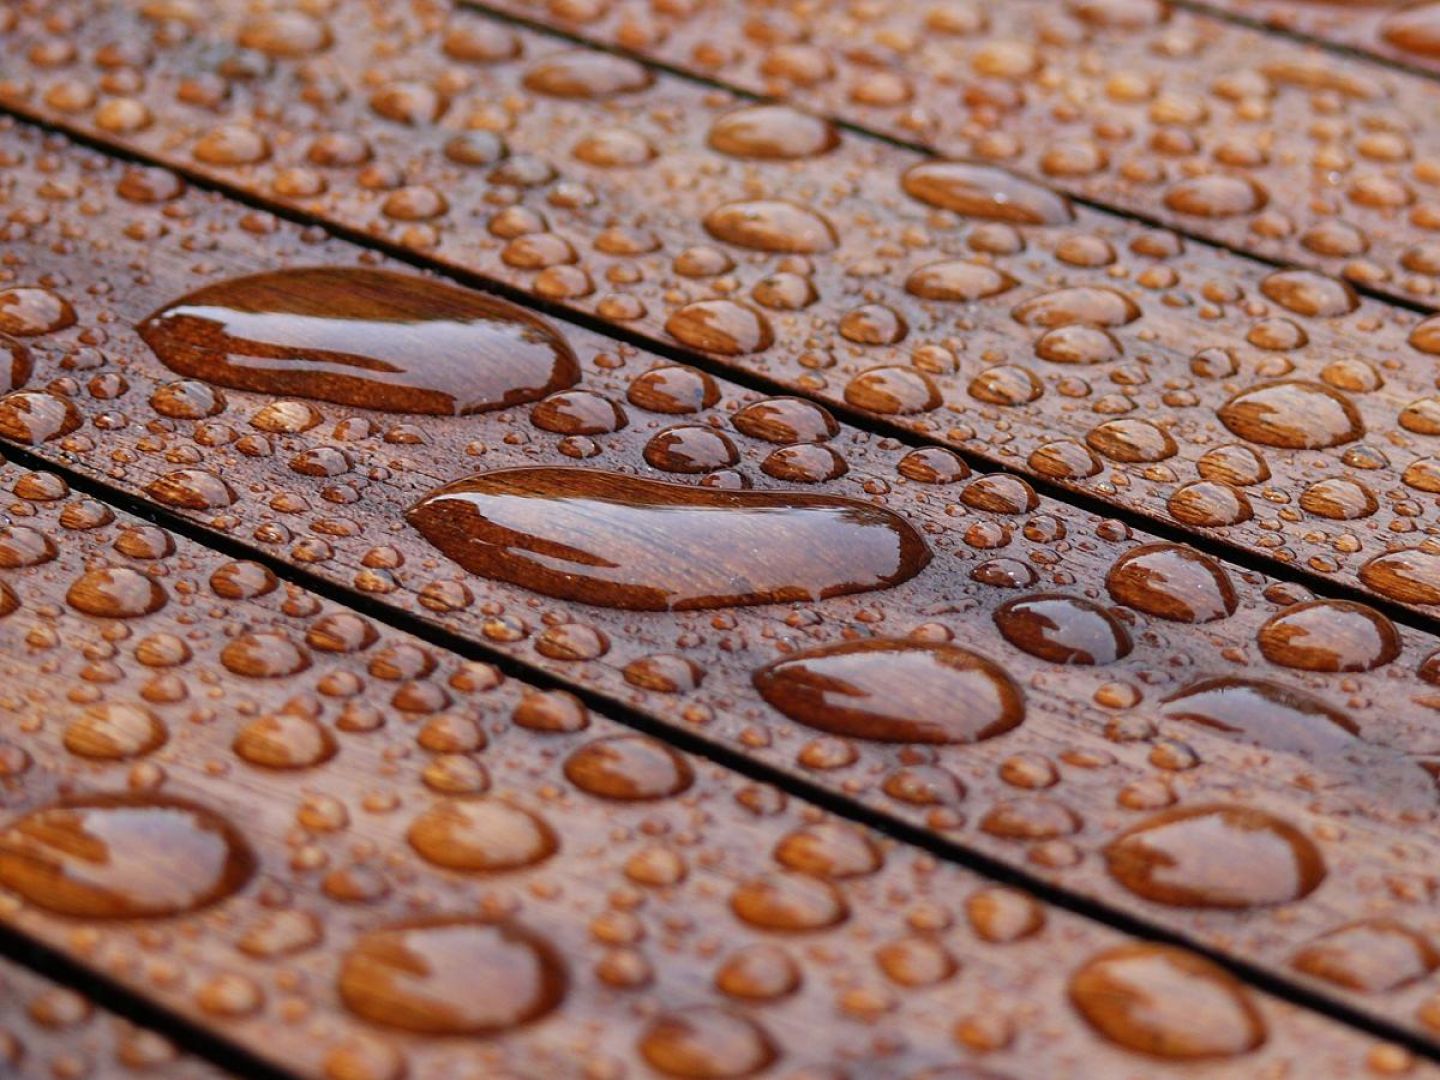 Woda i wilgoć stanowią duże zagrożenie dla elementów drewnianych dlatego należy je odpowiednio zabezpieczyć preparatem impregnującym. Fot. Shutterstock